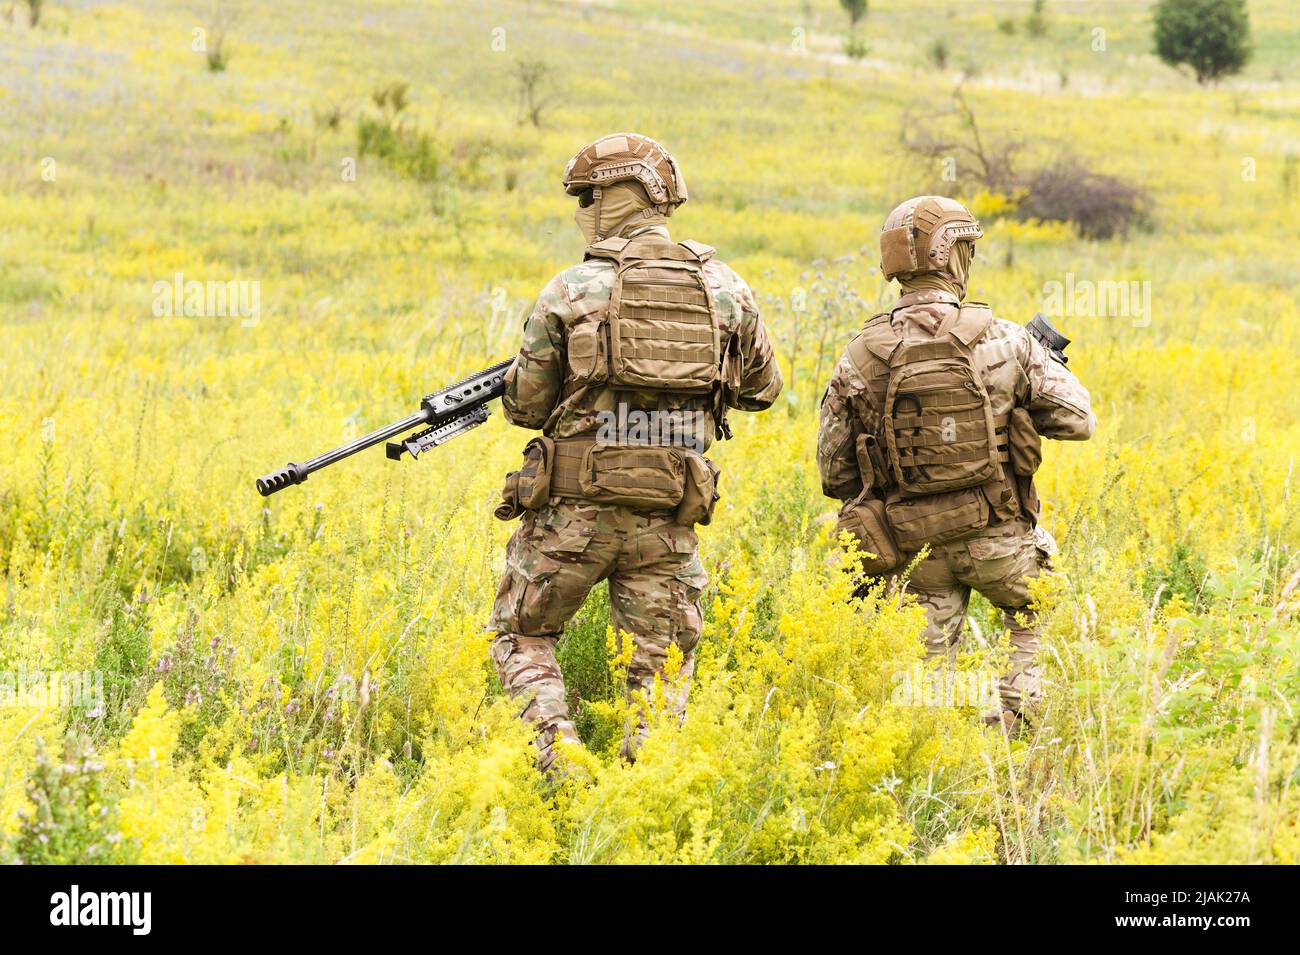 Vue arrière de deux soldats marchant dans un champ en fleurs pendant une patrouille à pied. Banque D'Images